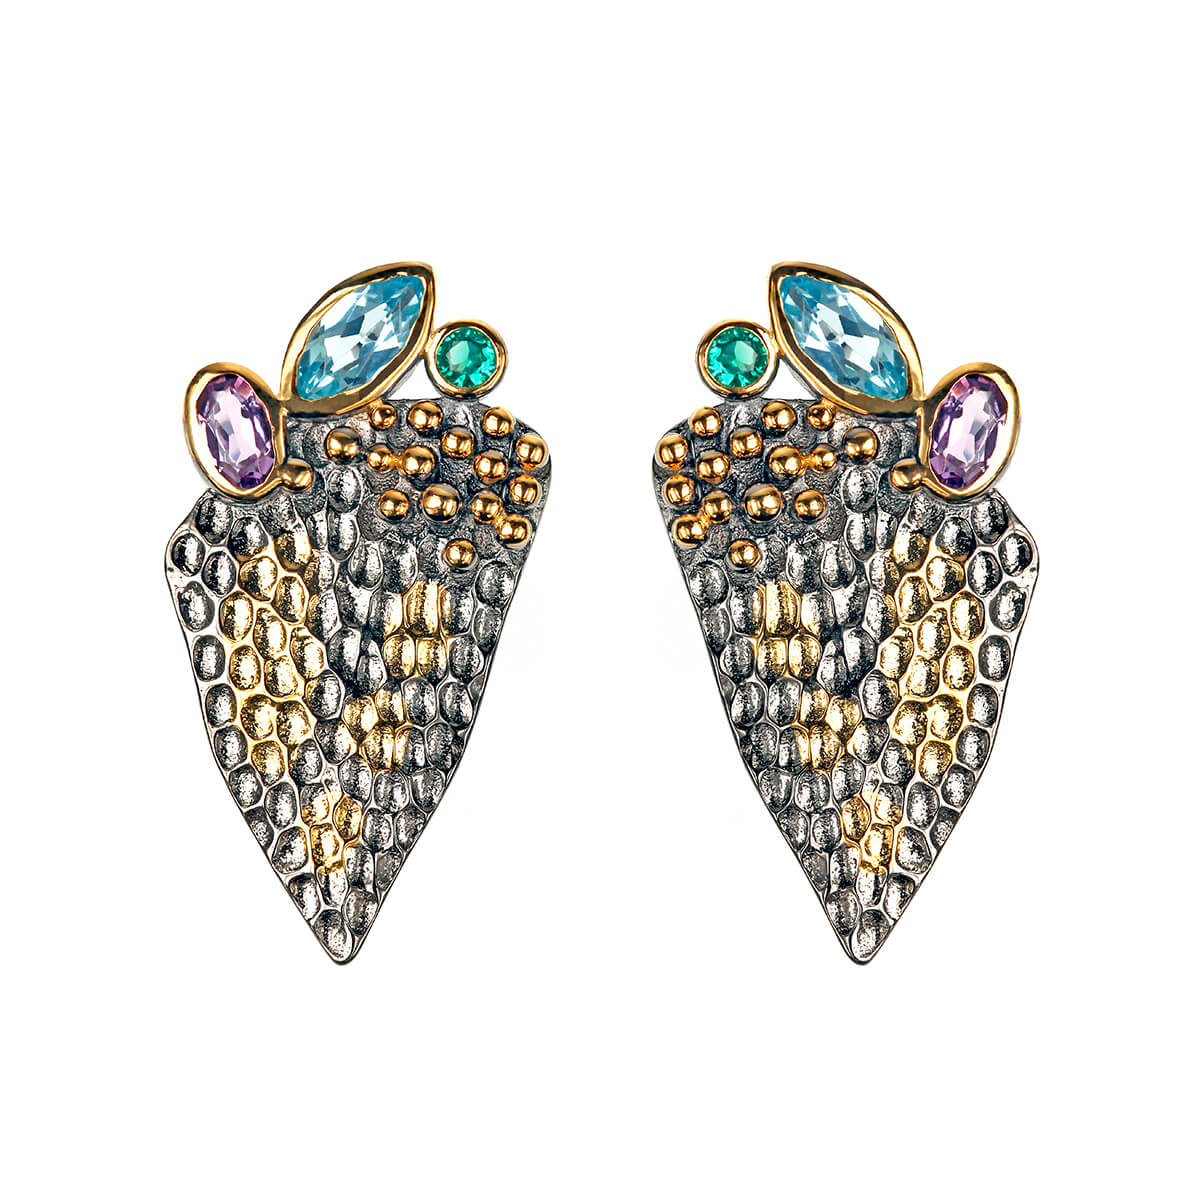 Biswa earrings